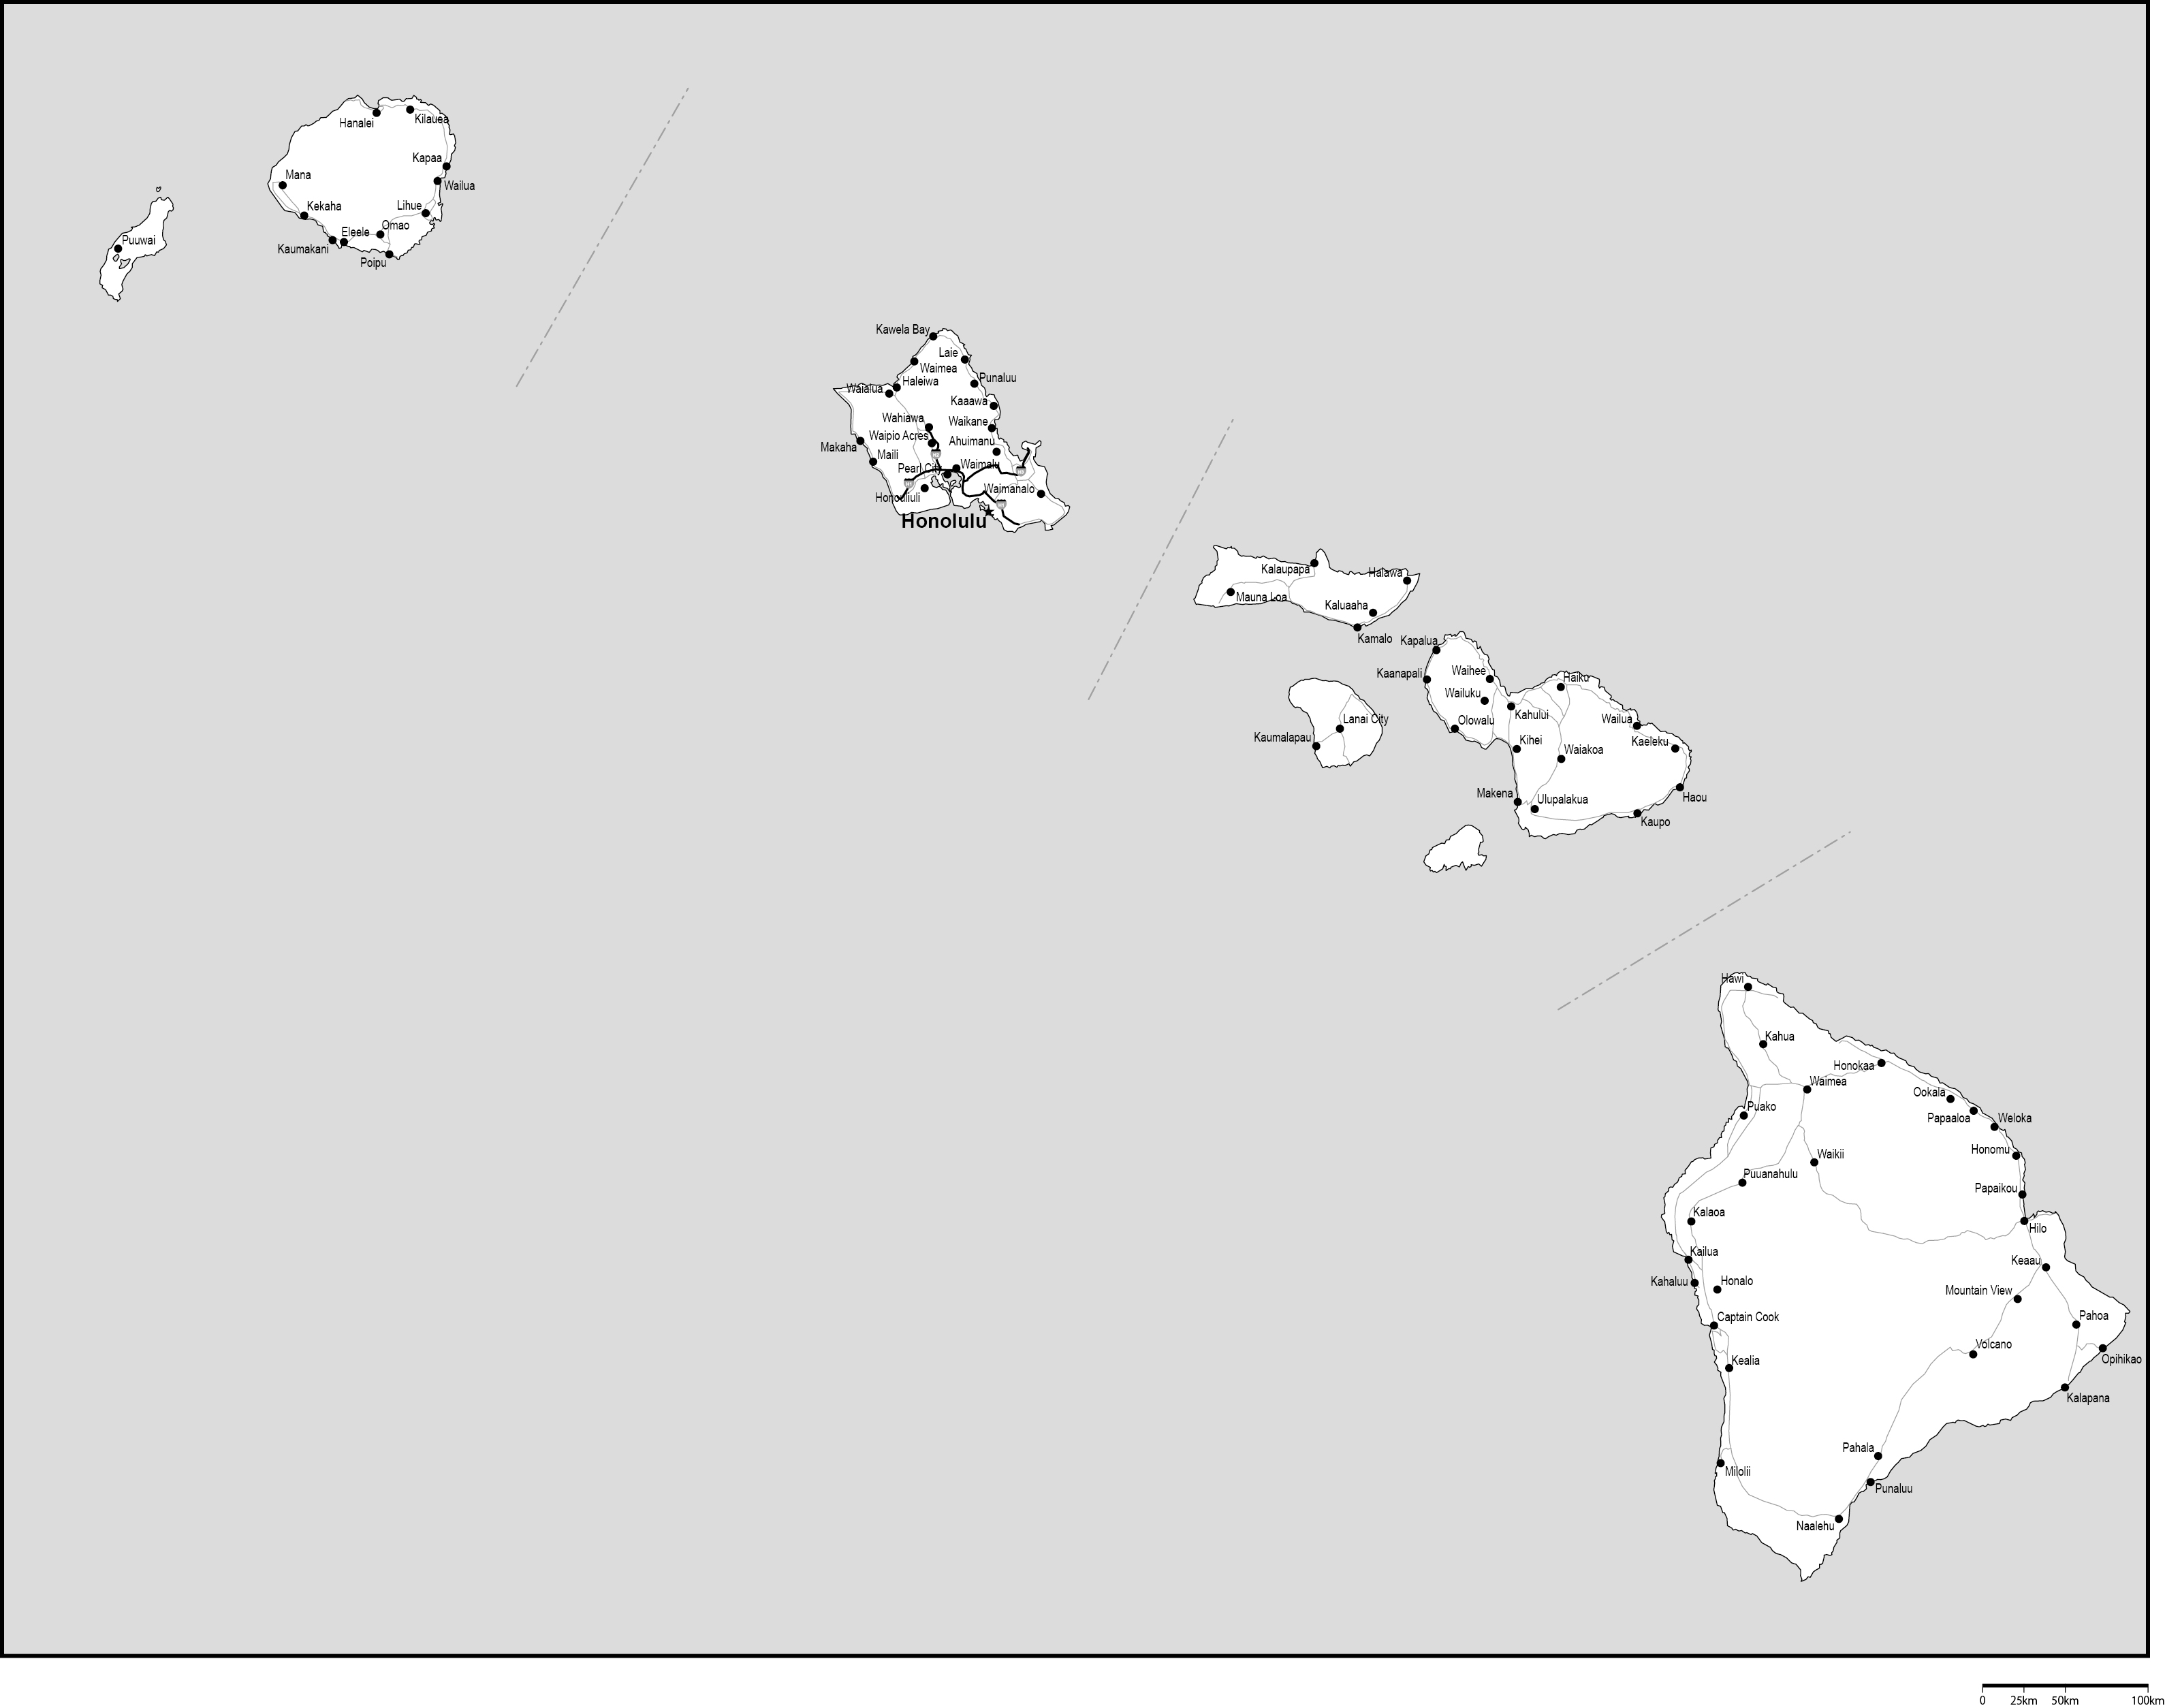 ハワイ州郡分け白地図州都・主な都市・道路あり(英語)フリーデータの画像